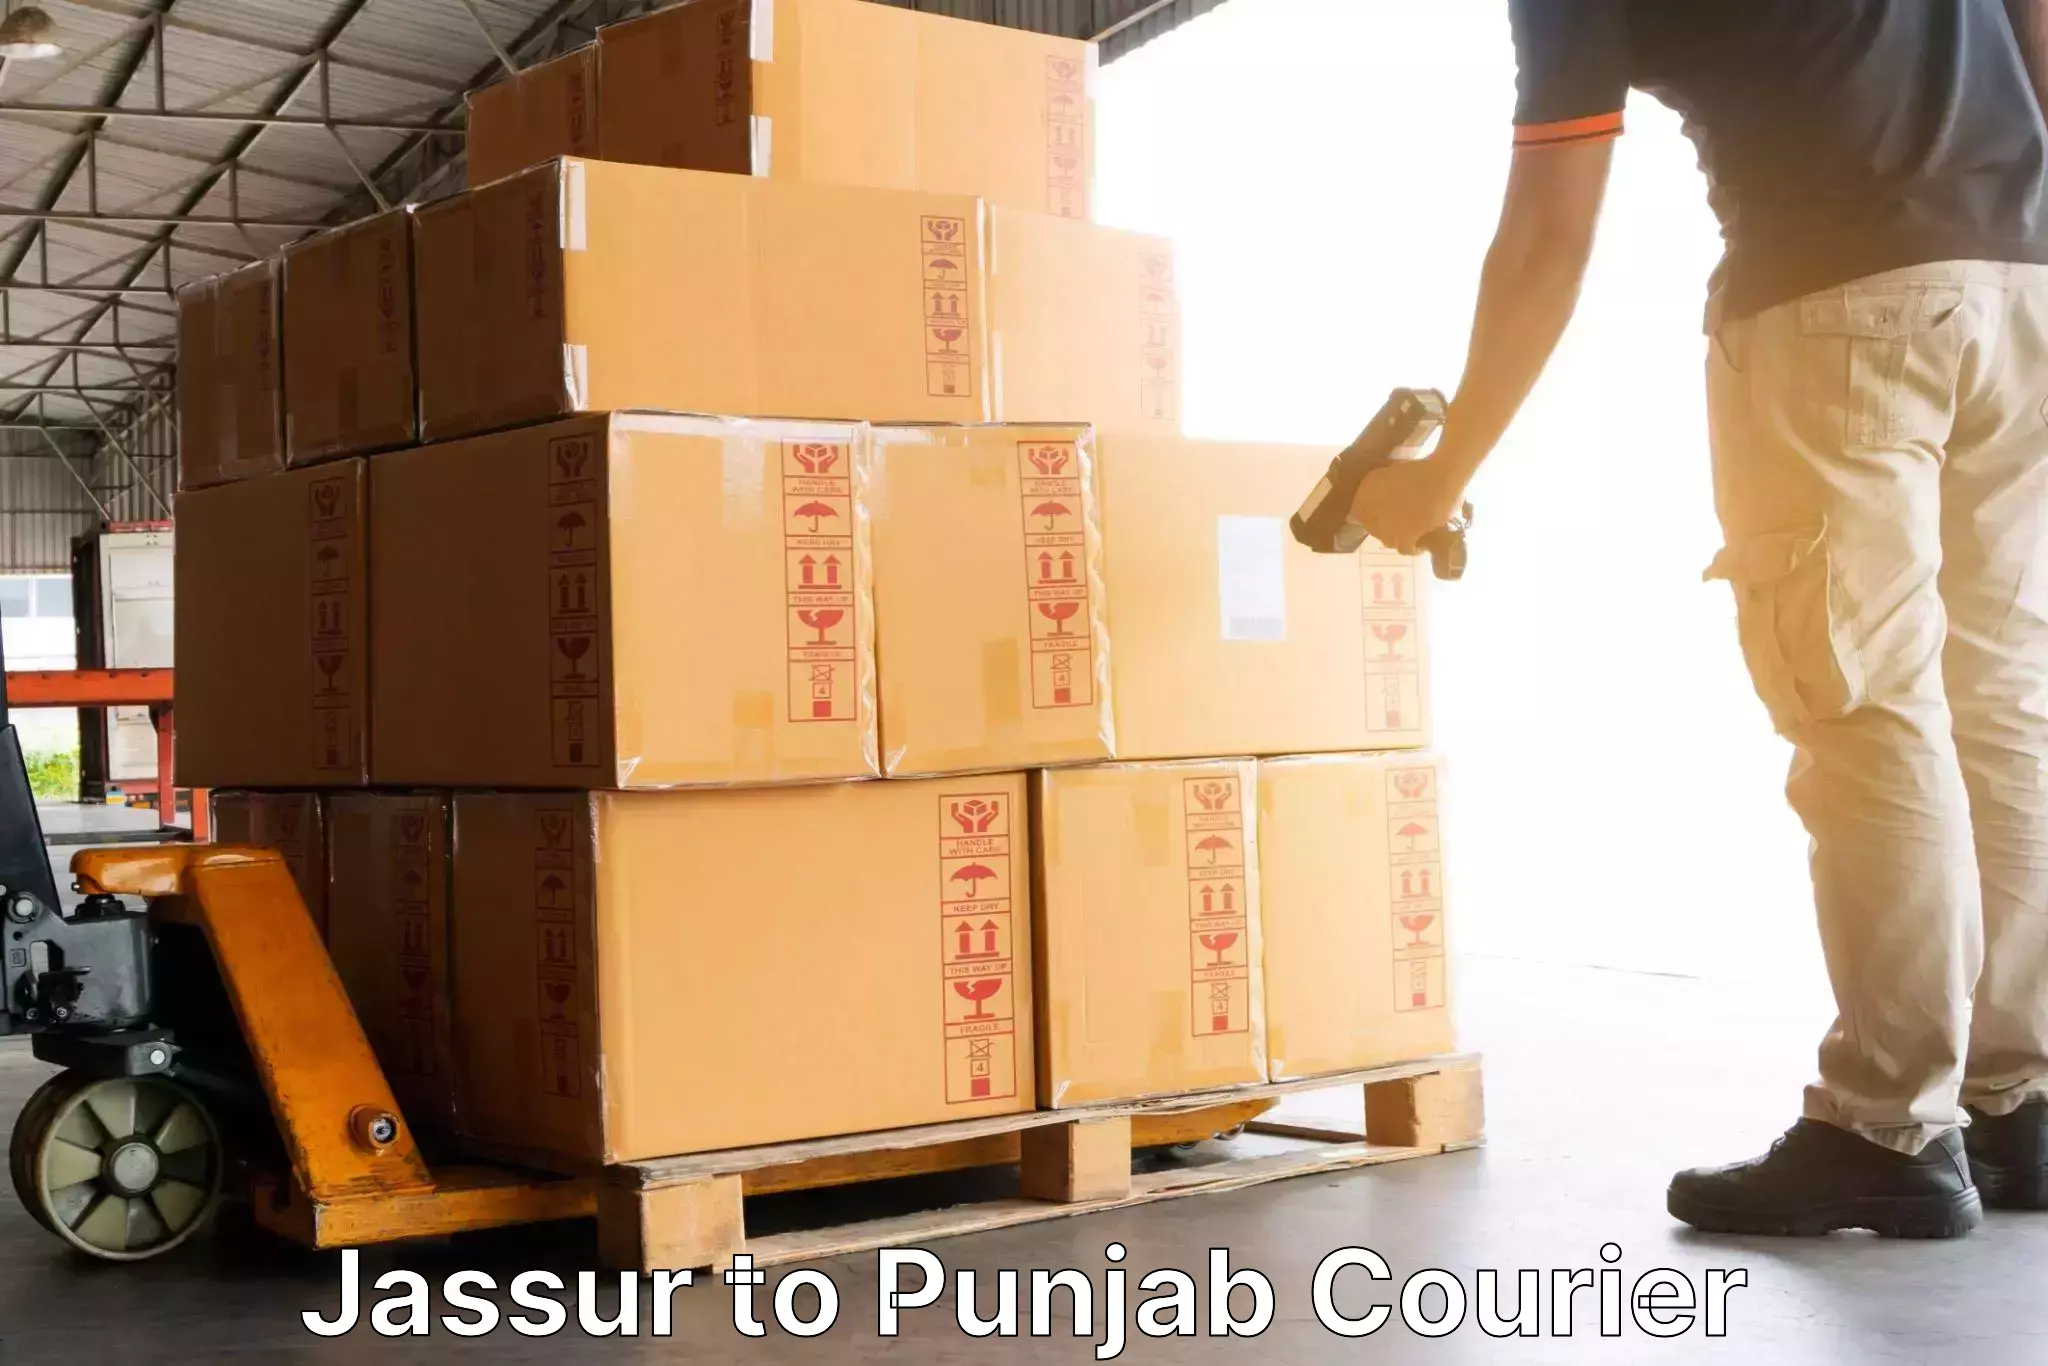 Courier dispatch services Jassur to Central University of Punjab Bathinda